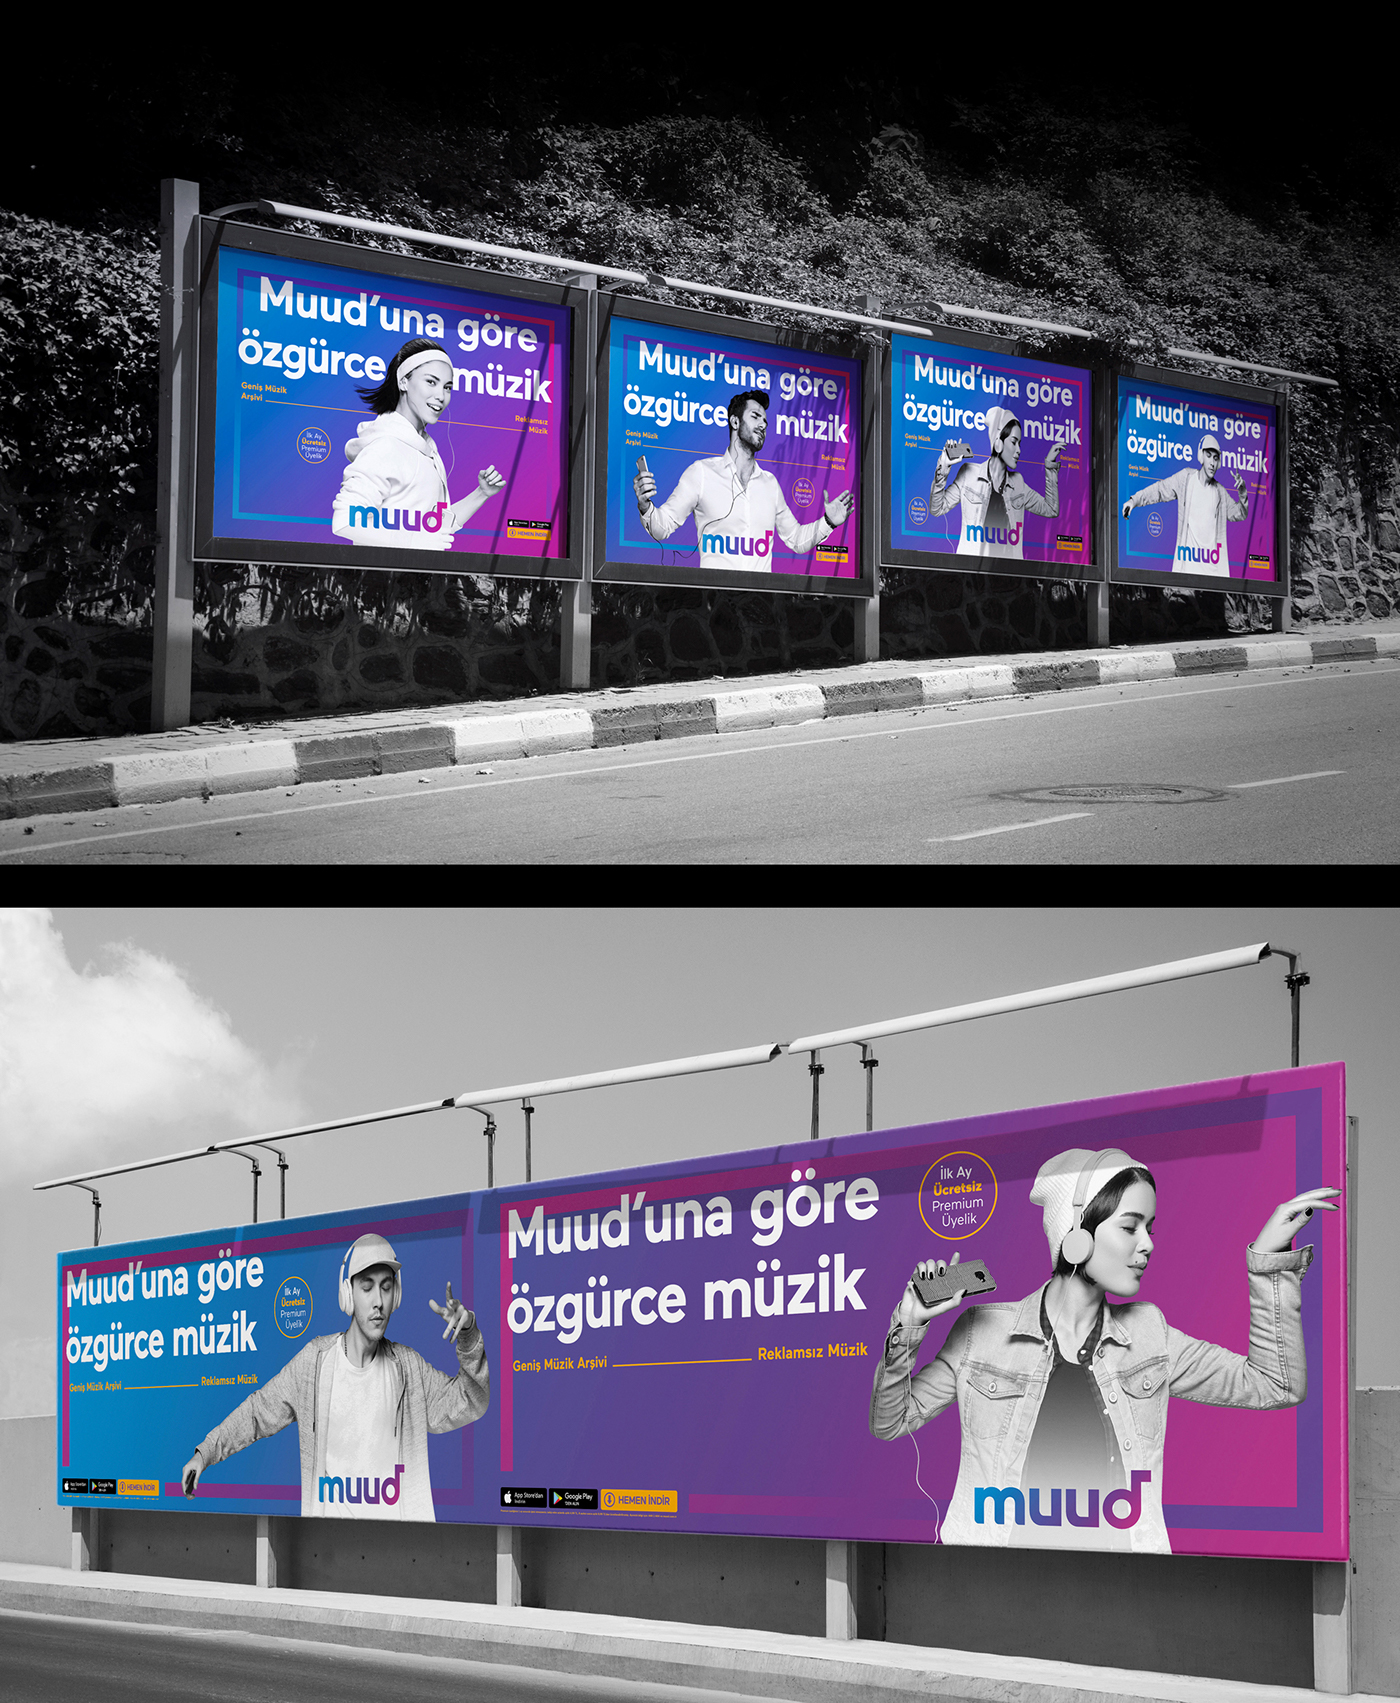 muud music app Türk Telekom mood Aksel Ceylan campaign